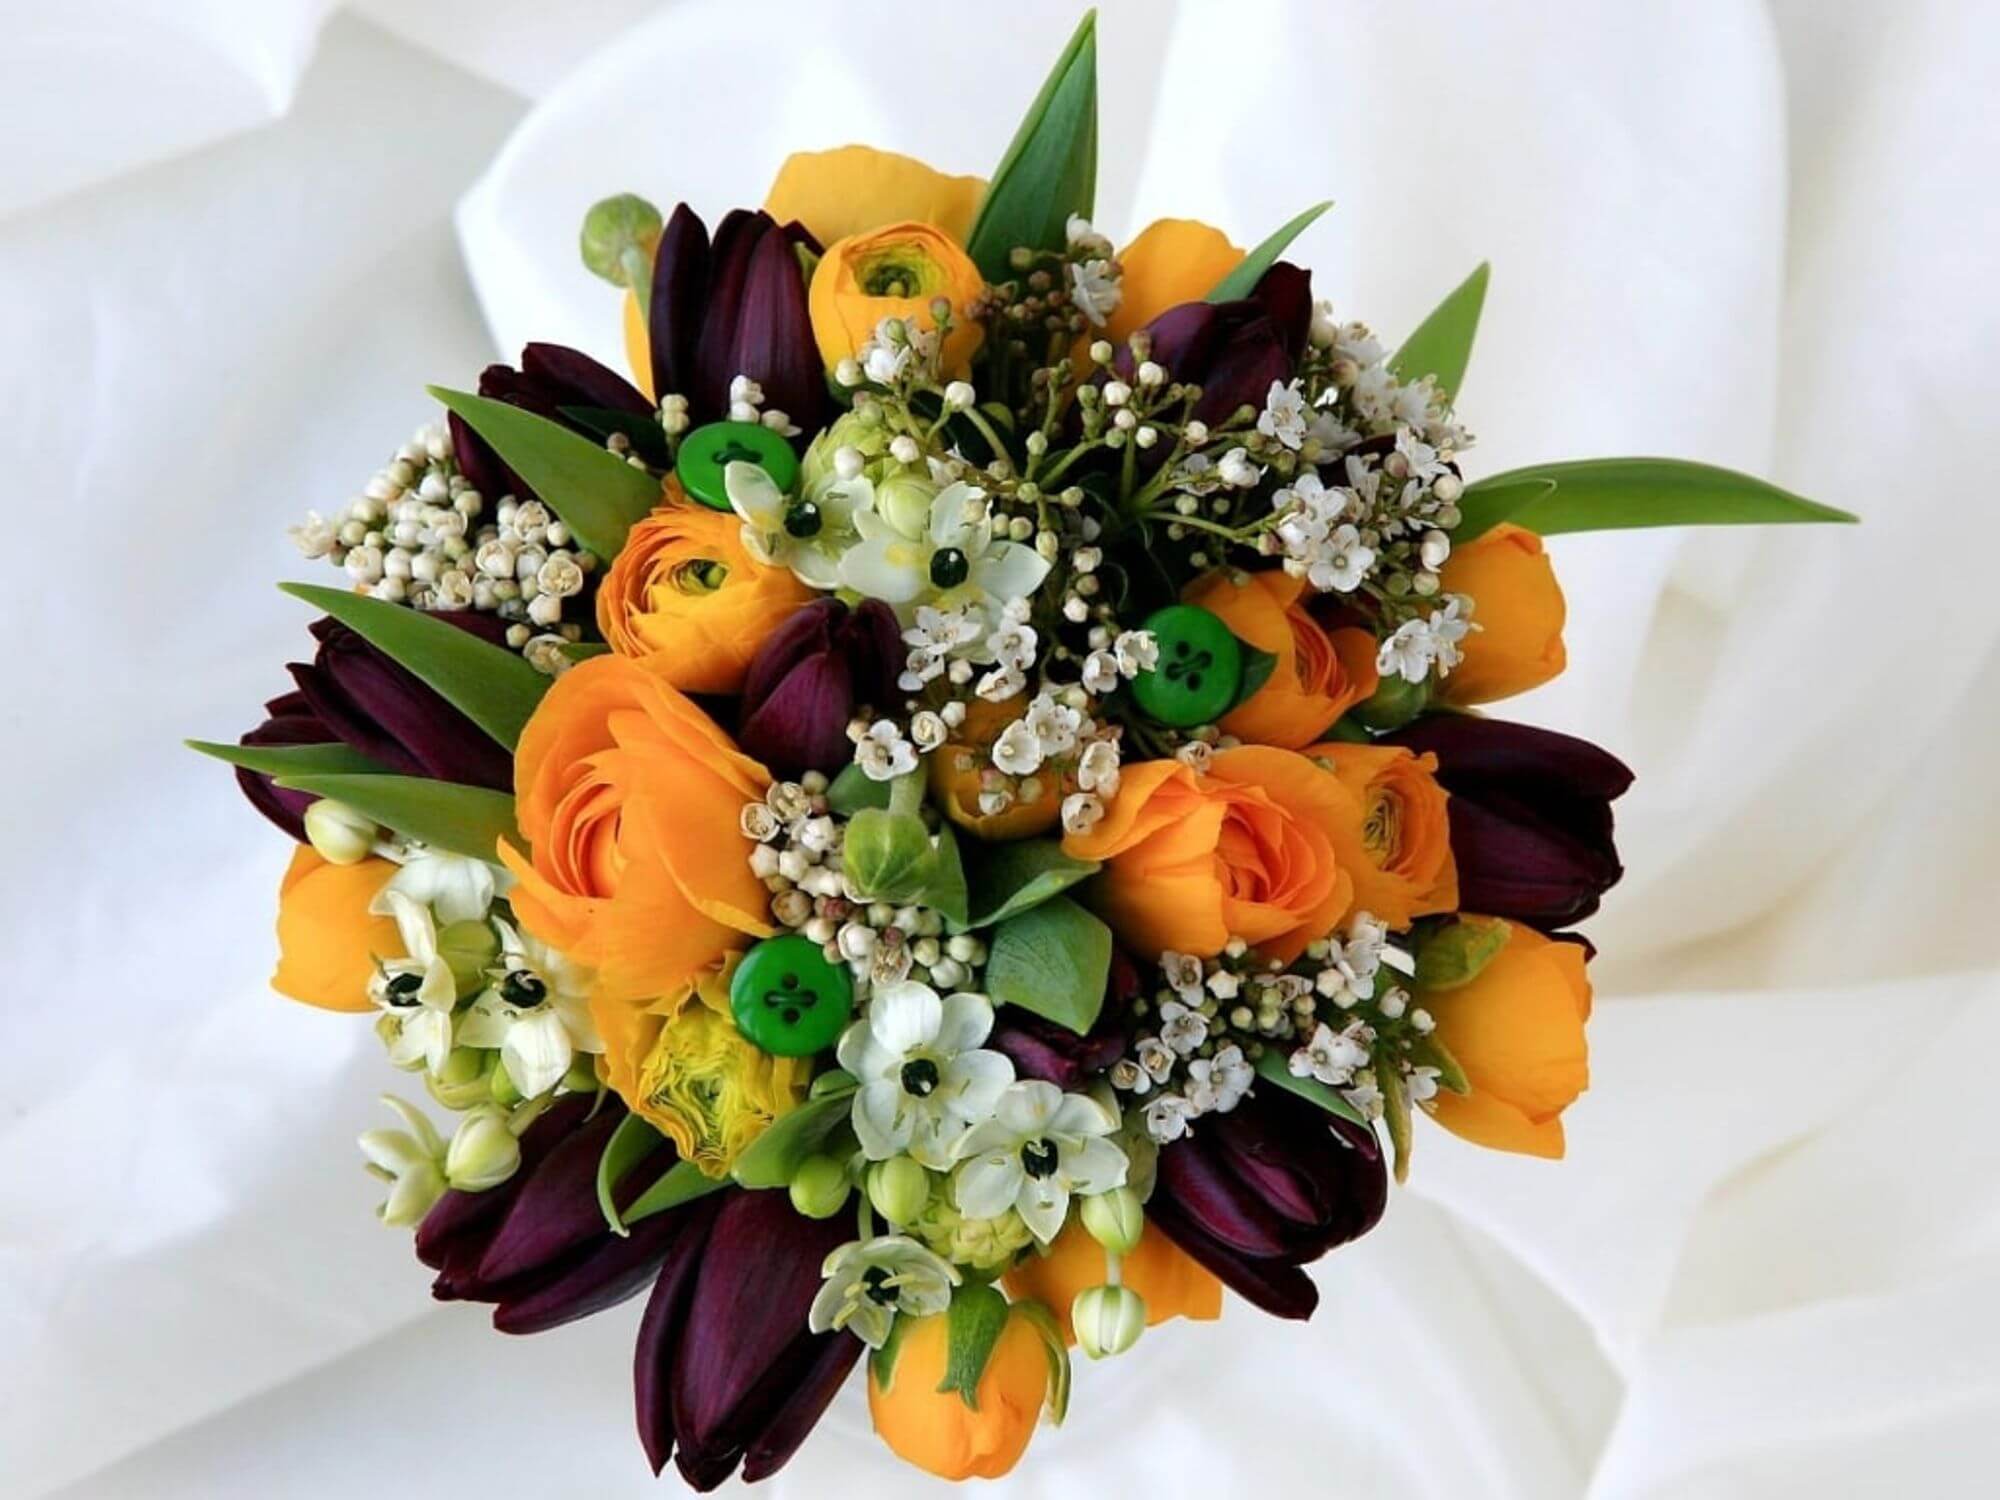 Ukraineflora wedding flowers 23-24 00 4